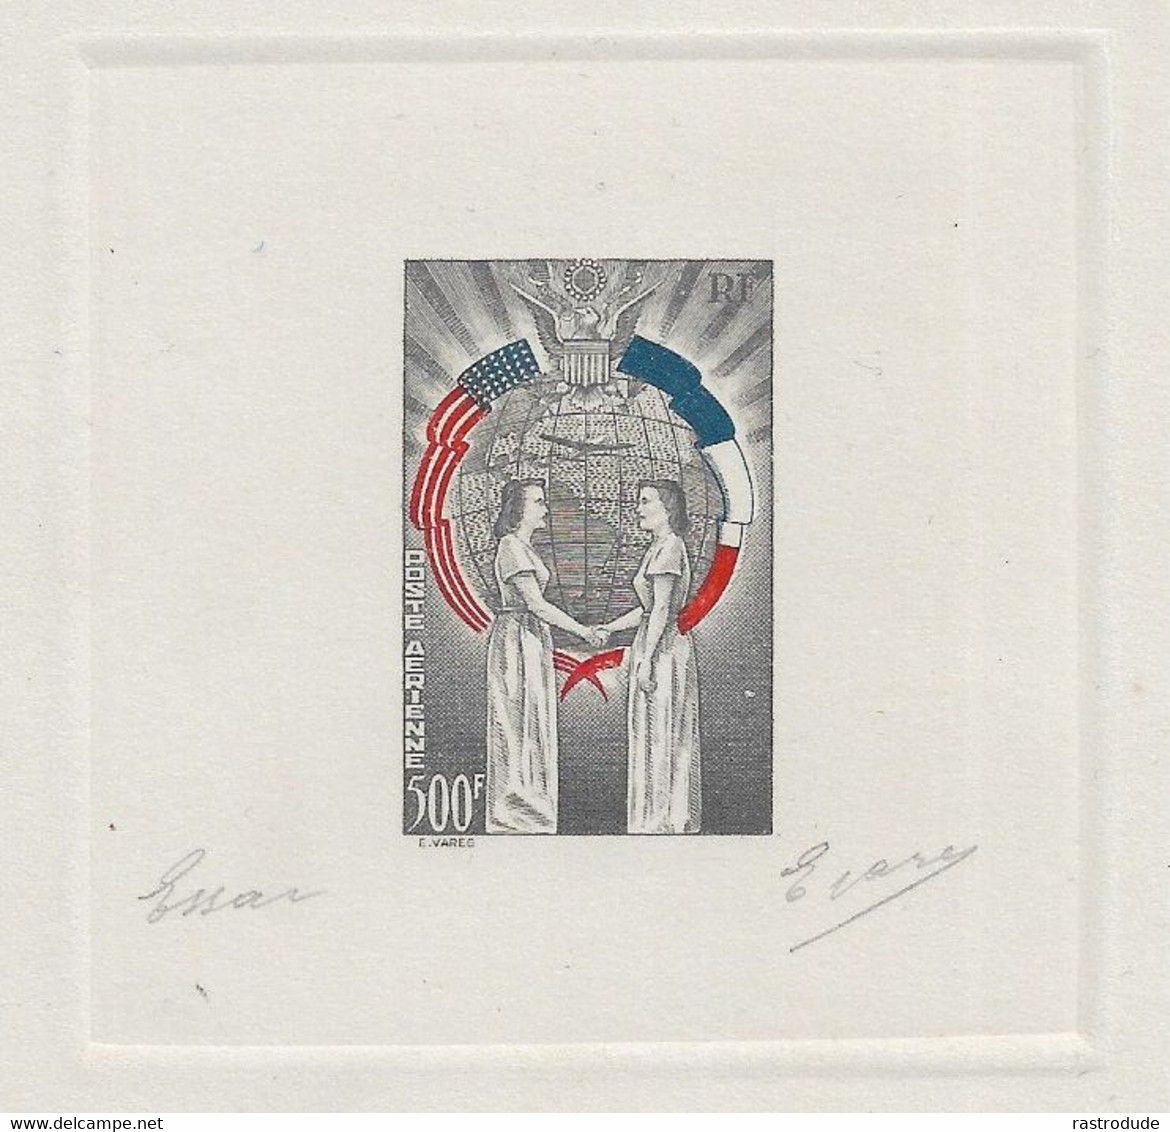 1949 FRANCE - TROIS COULEURS EPREUVE D'ARTISTE - NON EMIS -  L'AMITIÉ FRANCO-AMÉRICAINE SIGNE E.VARES - RARE - Prove D'artista